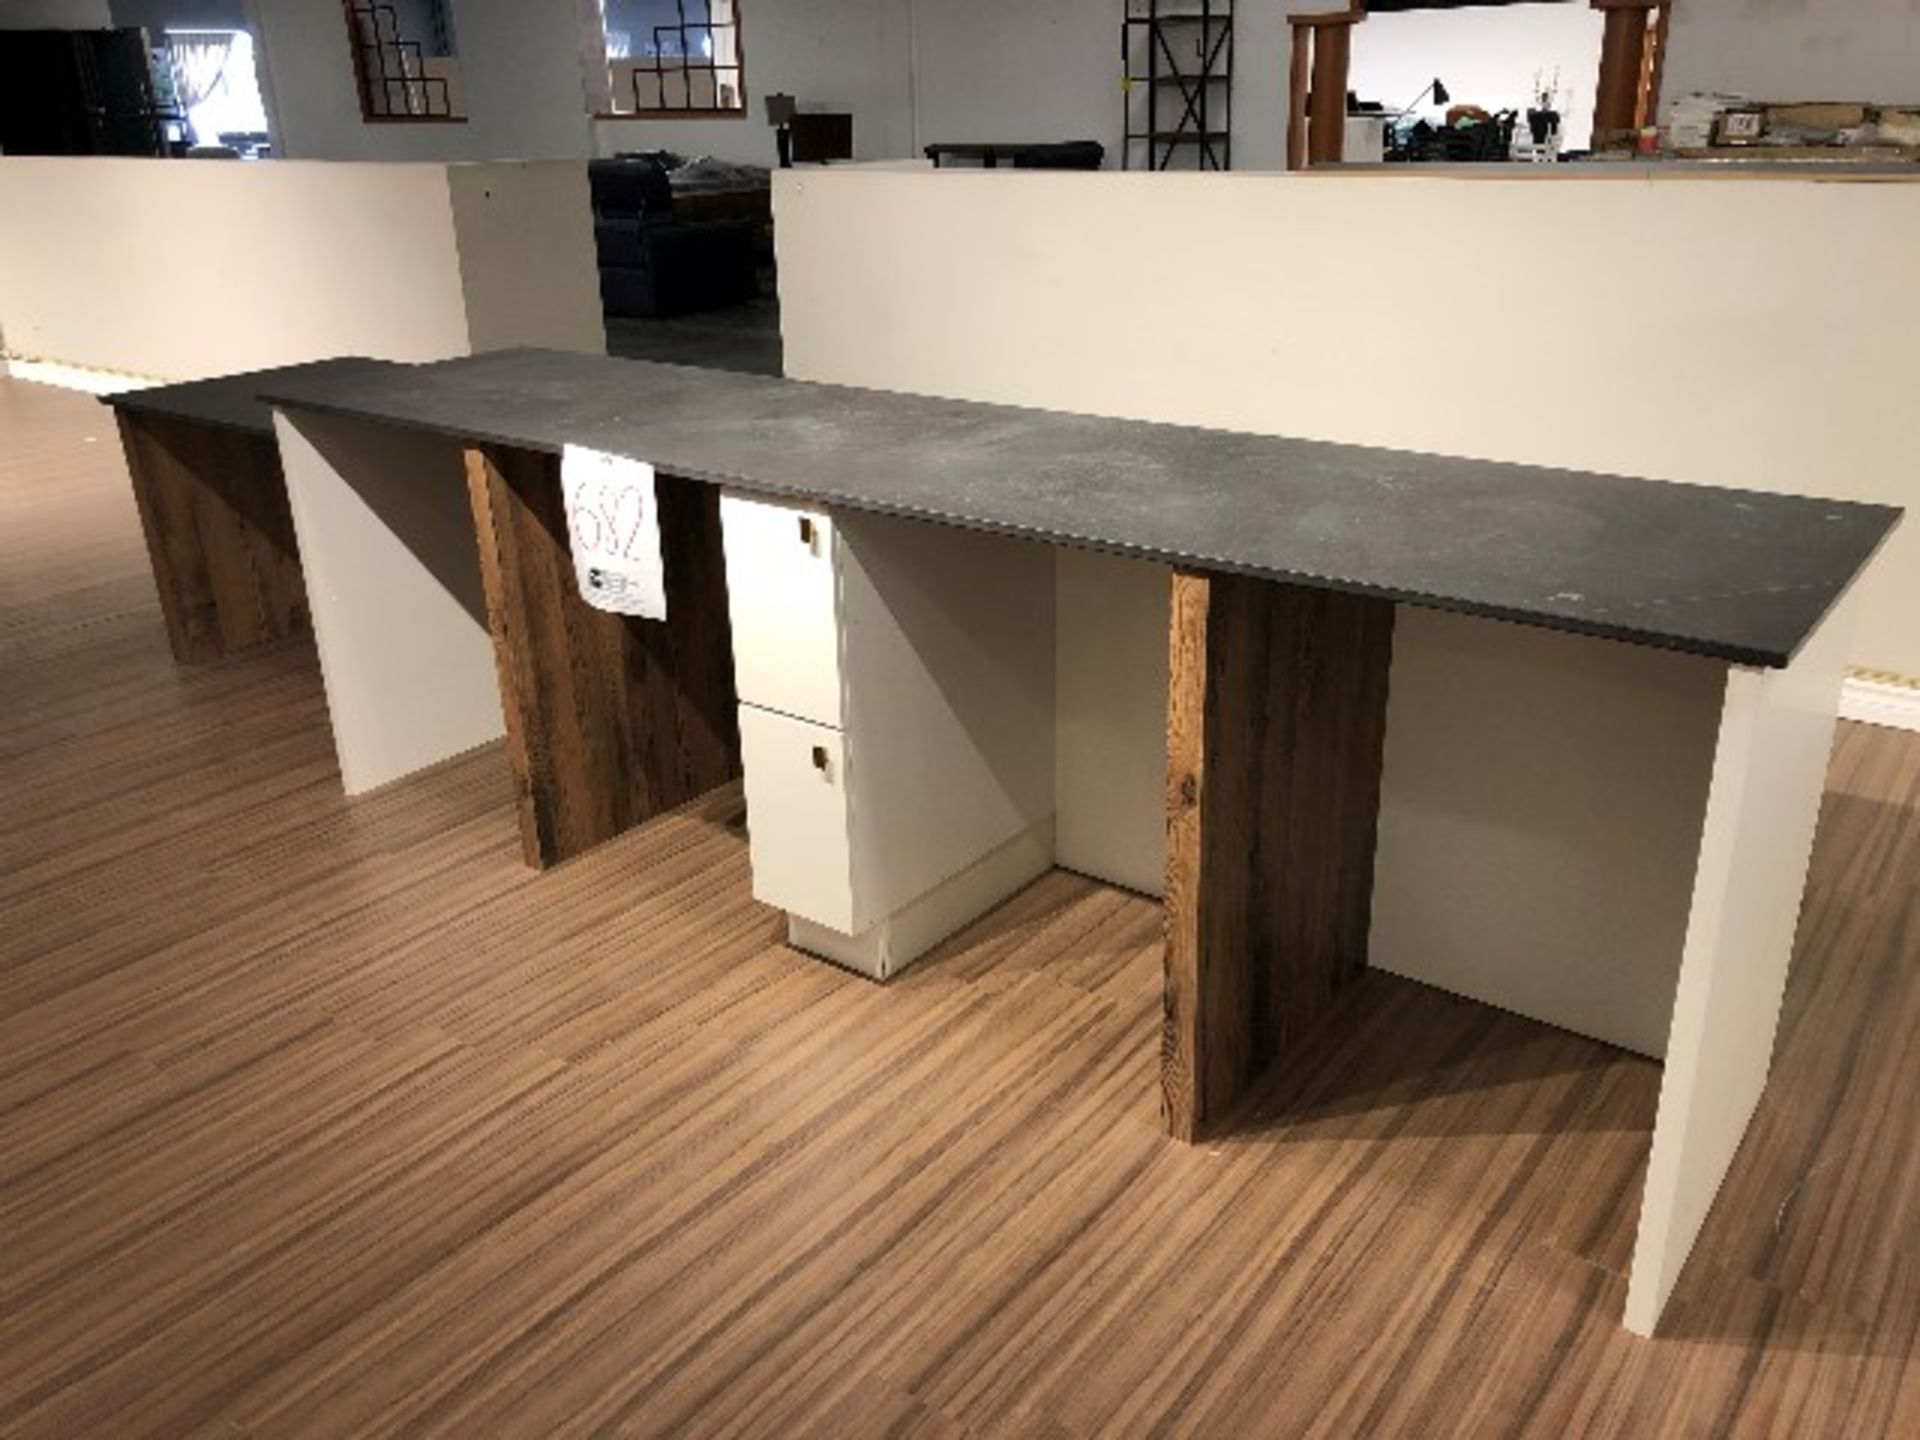 Countertop cabinet w/side tabel, 162”x40”